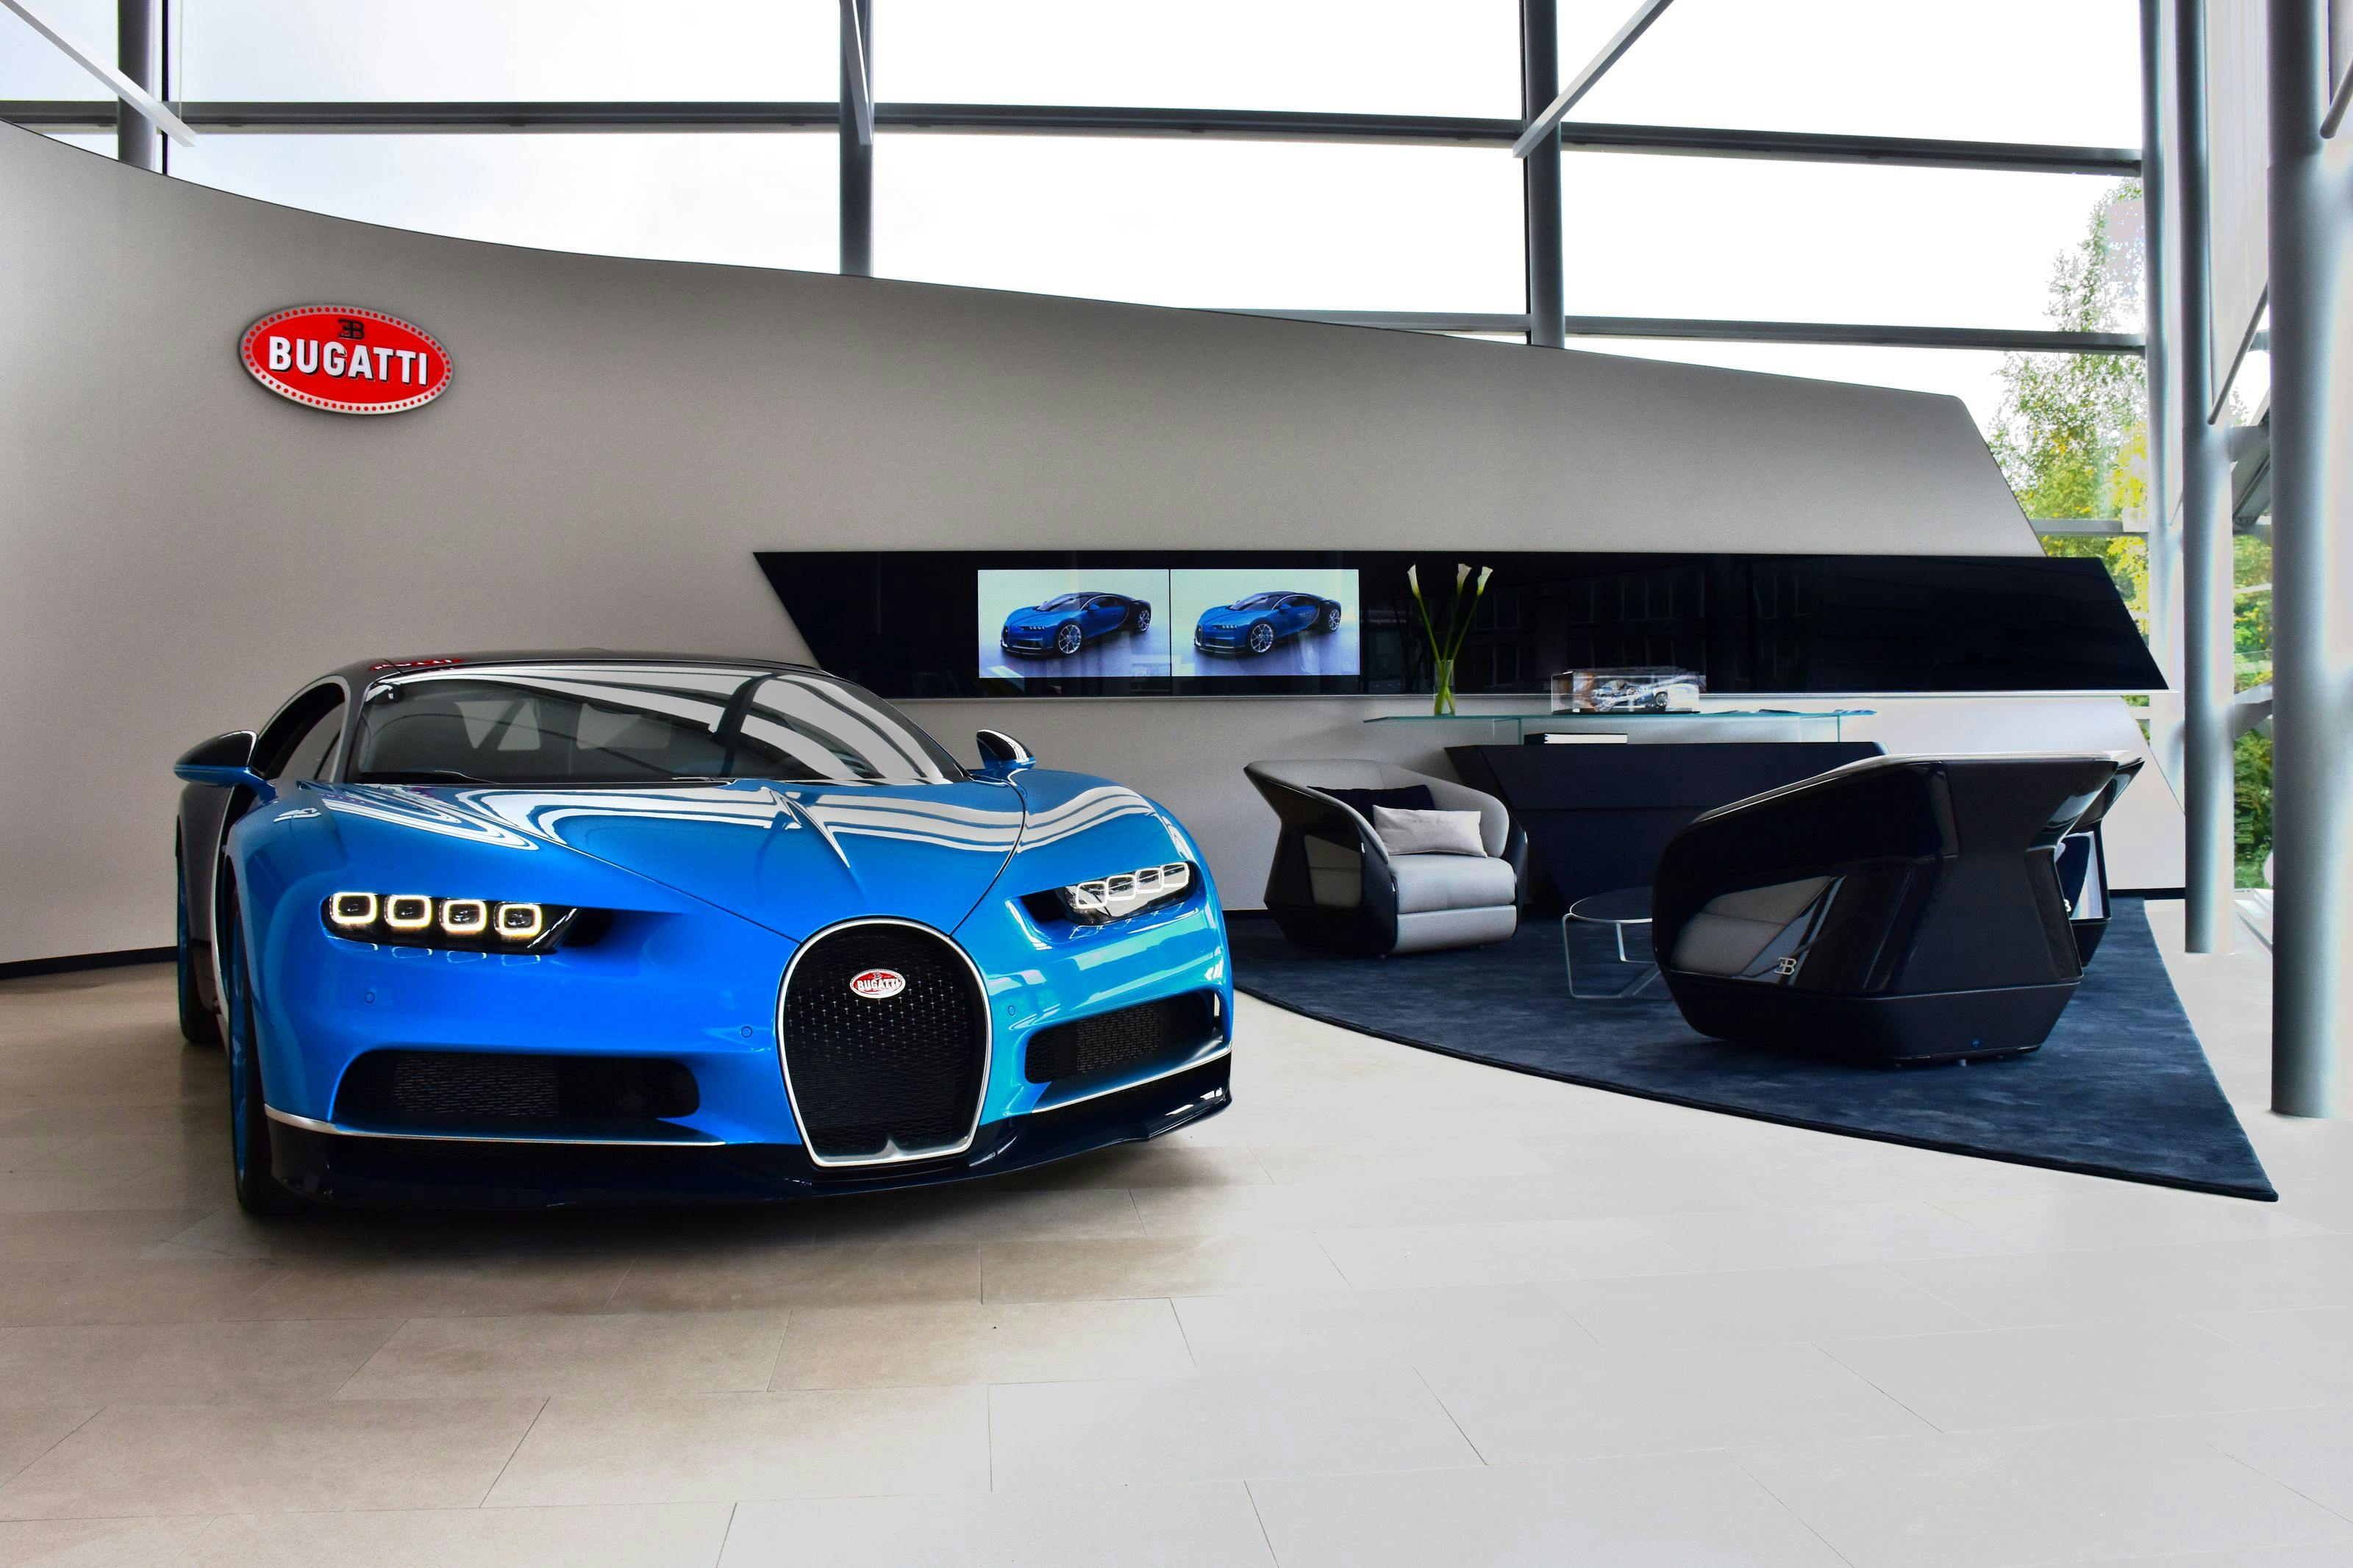 Le showroom Bugatti de Zurich au nouveau design de la marque ouvre ses portes